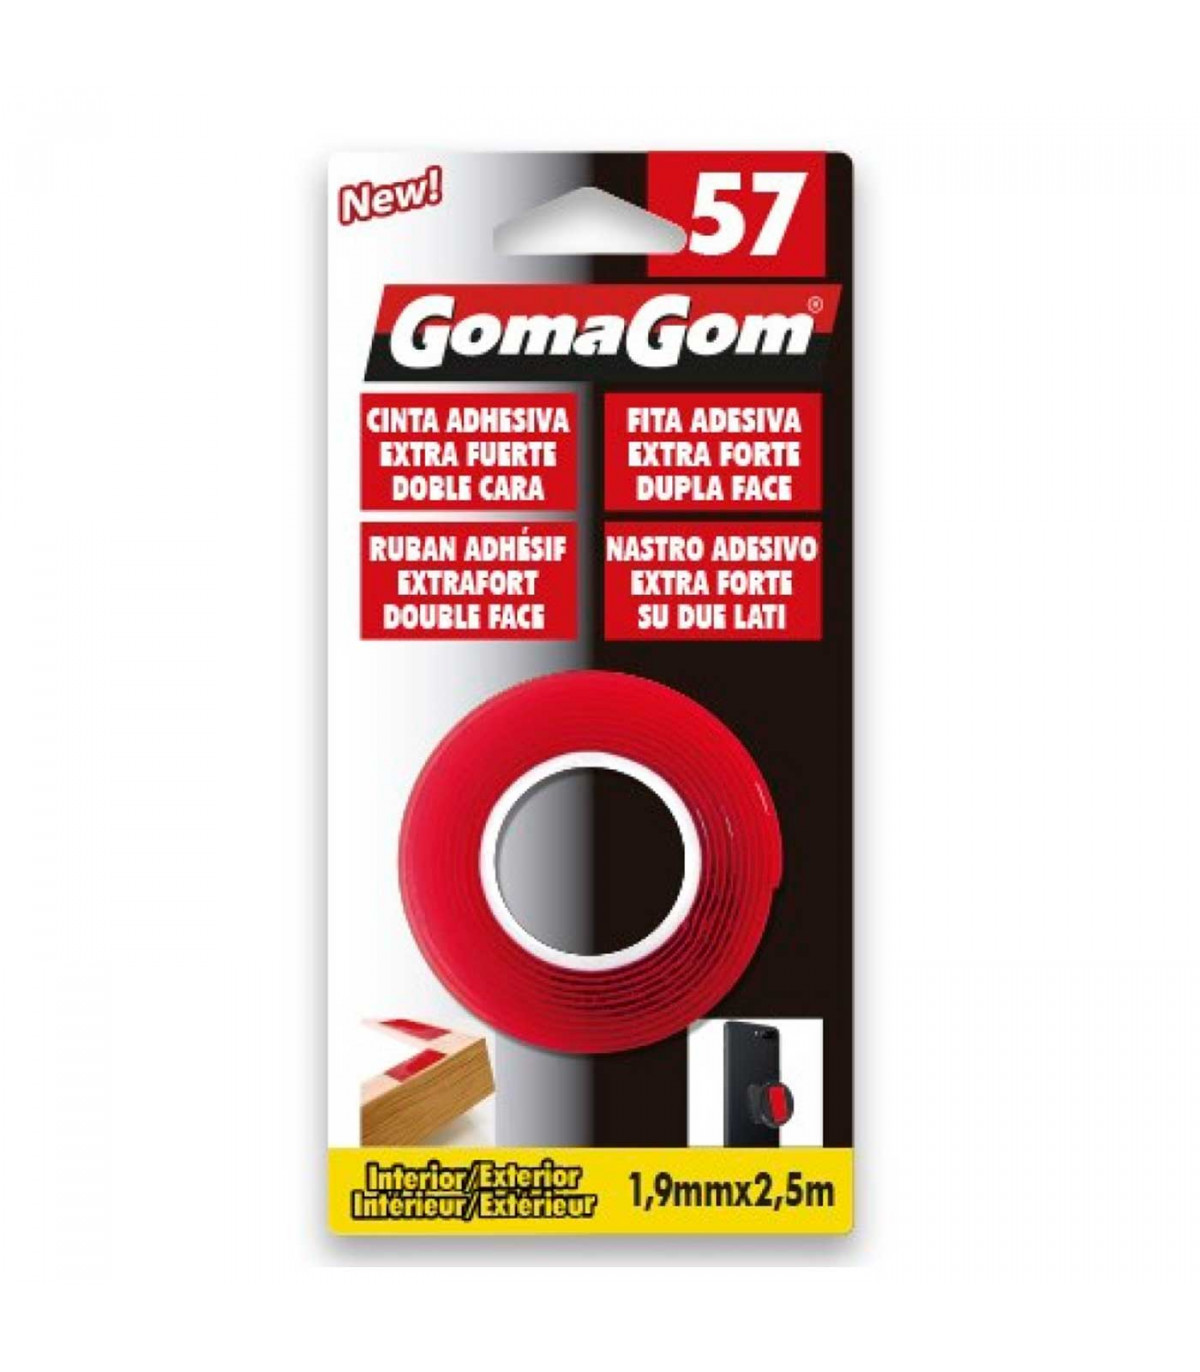 Gomagom - Cinta adhesiva doble cara extra fuerte fácil y segura